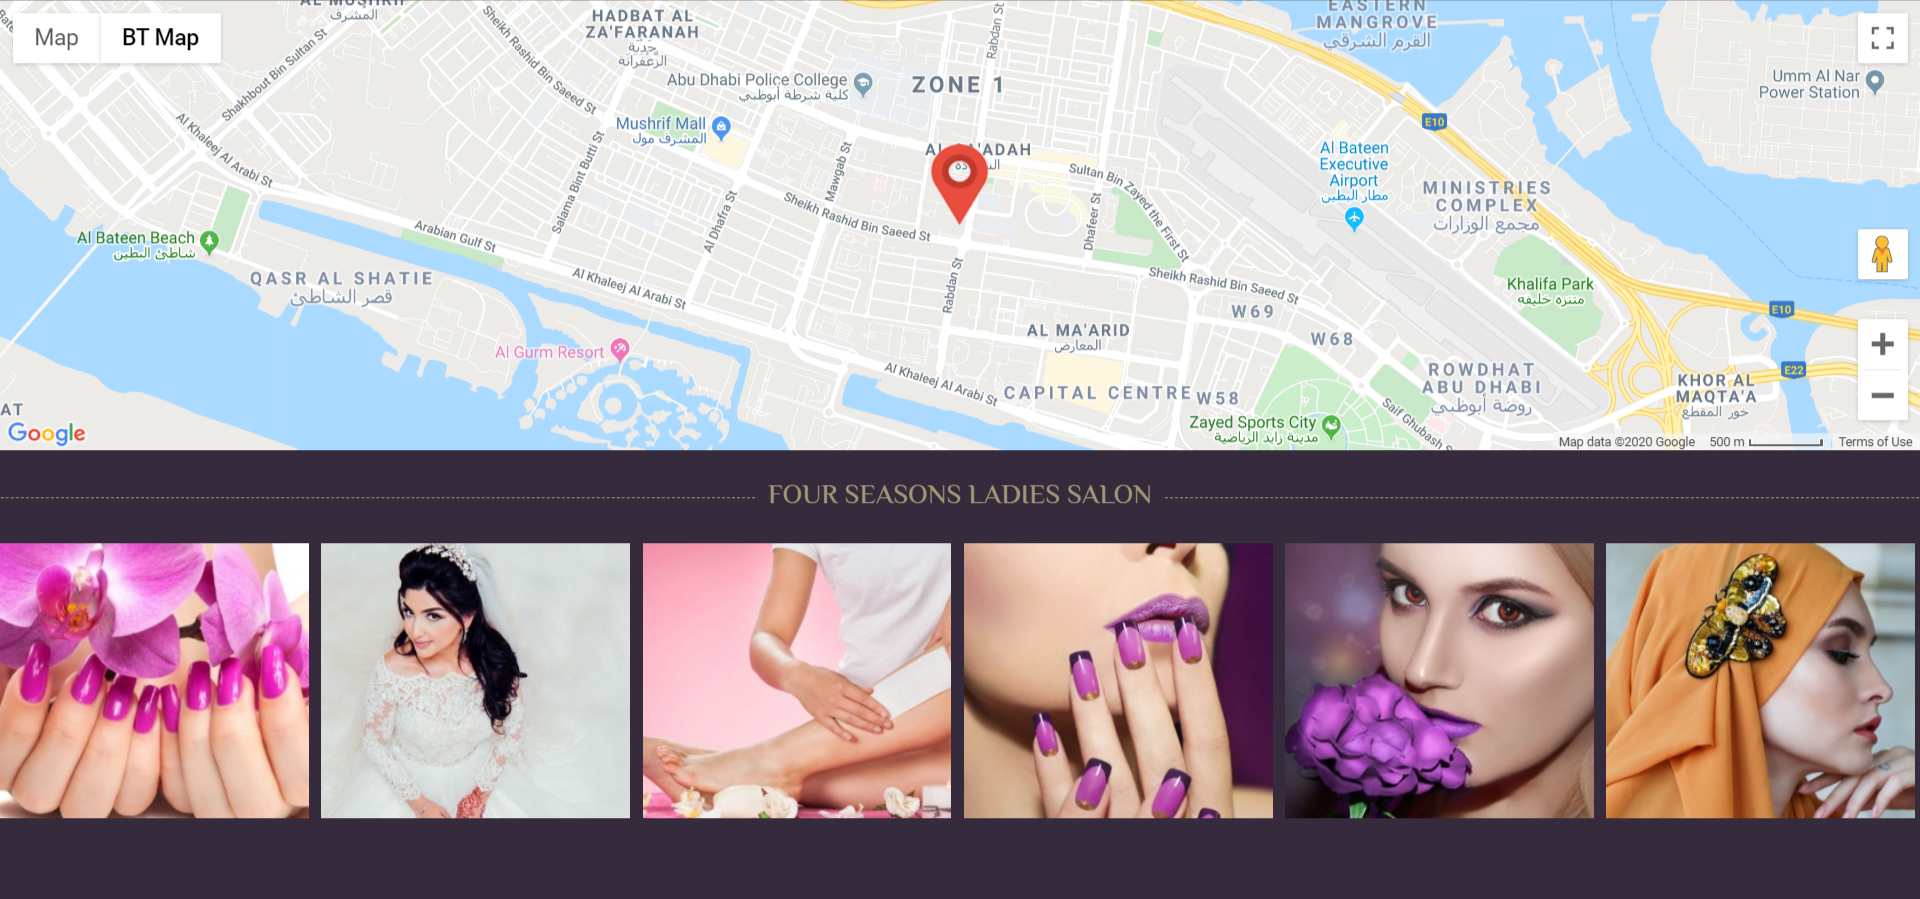 تصميم موقع اليكتروني أحترافي لصالون تجميل فى المدينة المنورة - السعودية